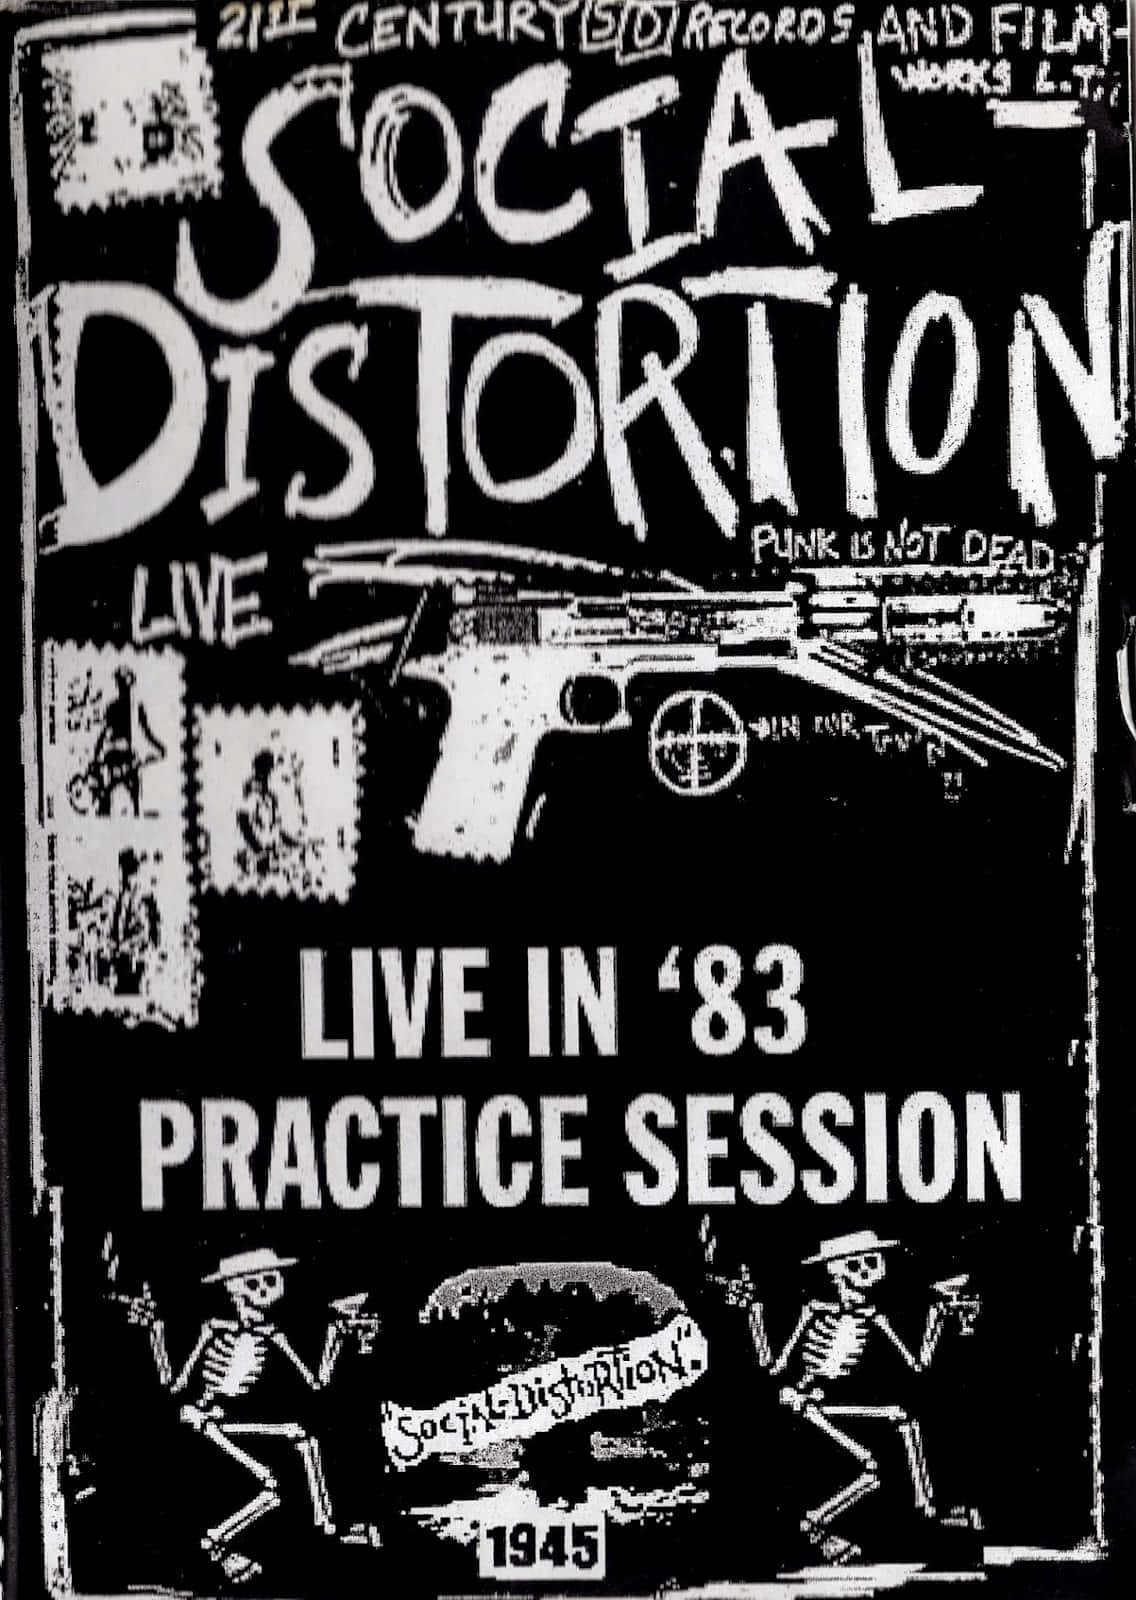 Socialdistortion 1983-affisch. Wallpaper